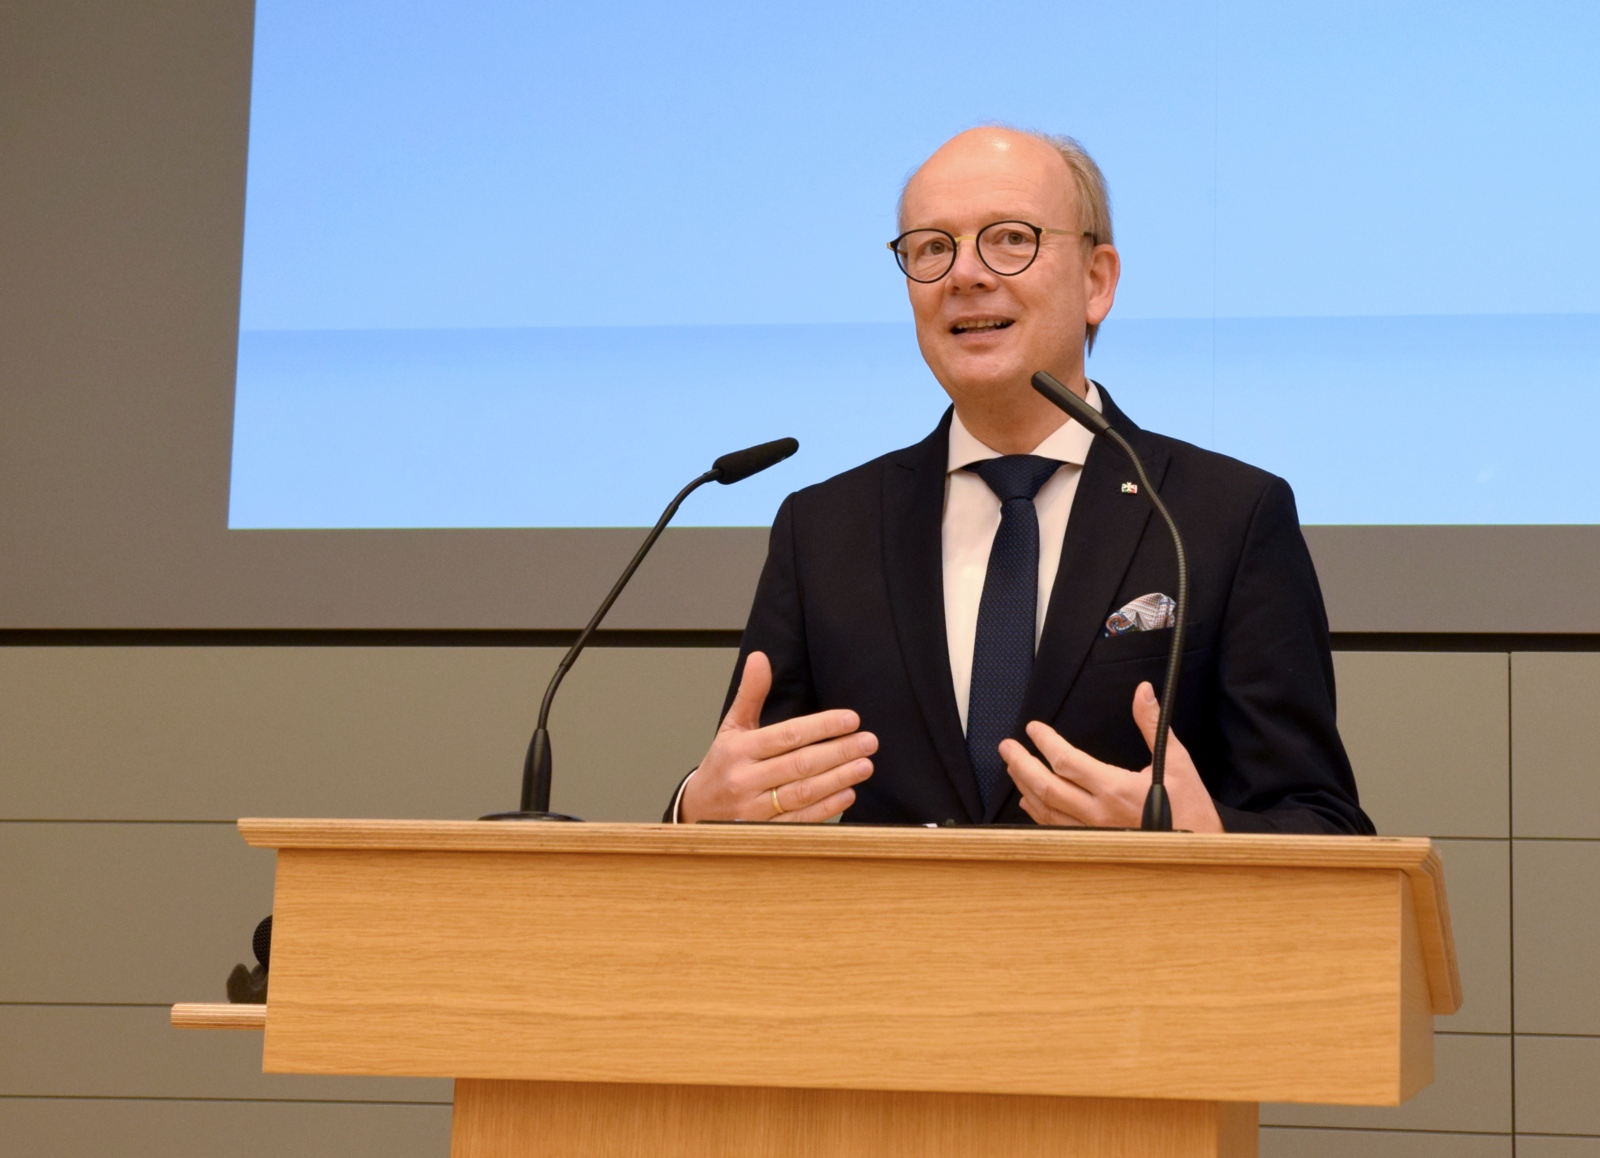 André Kuper, NRW-Landtagspräsident